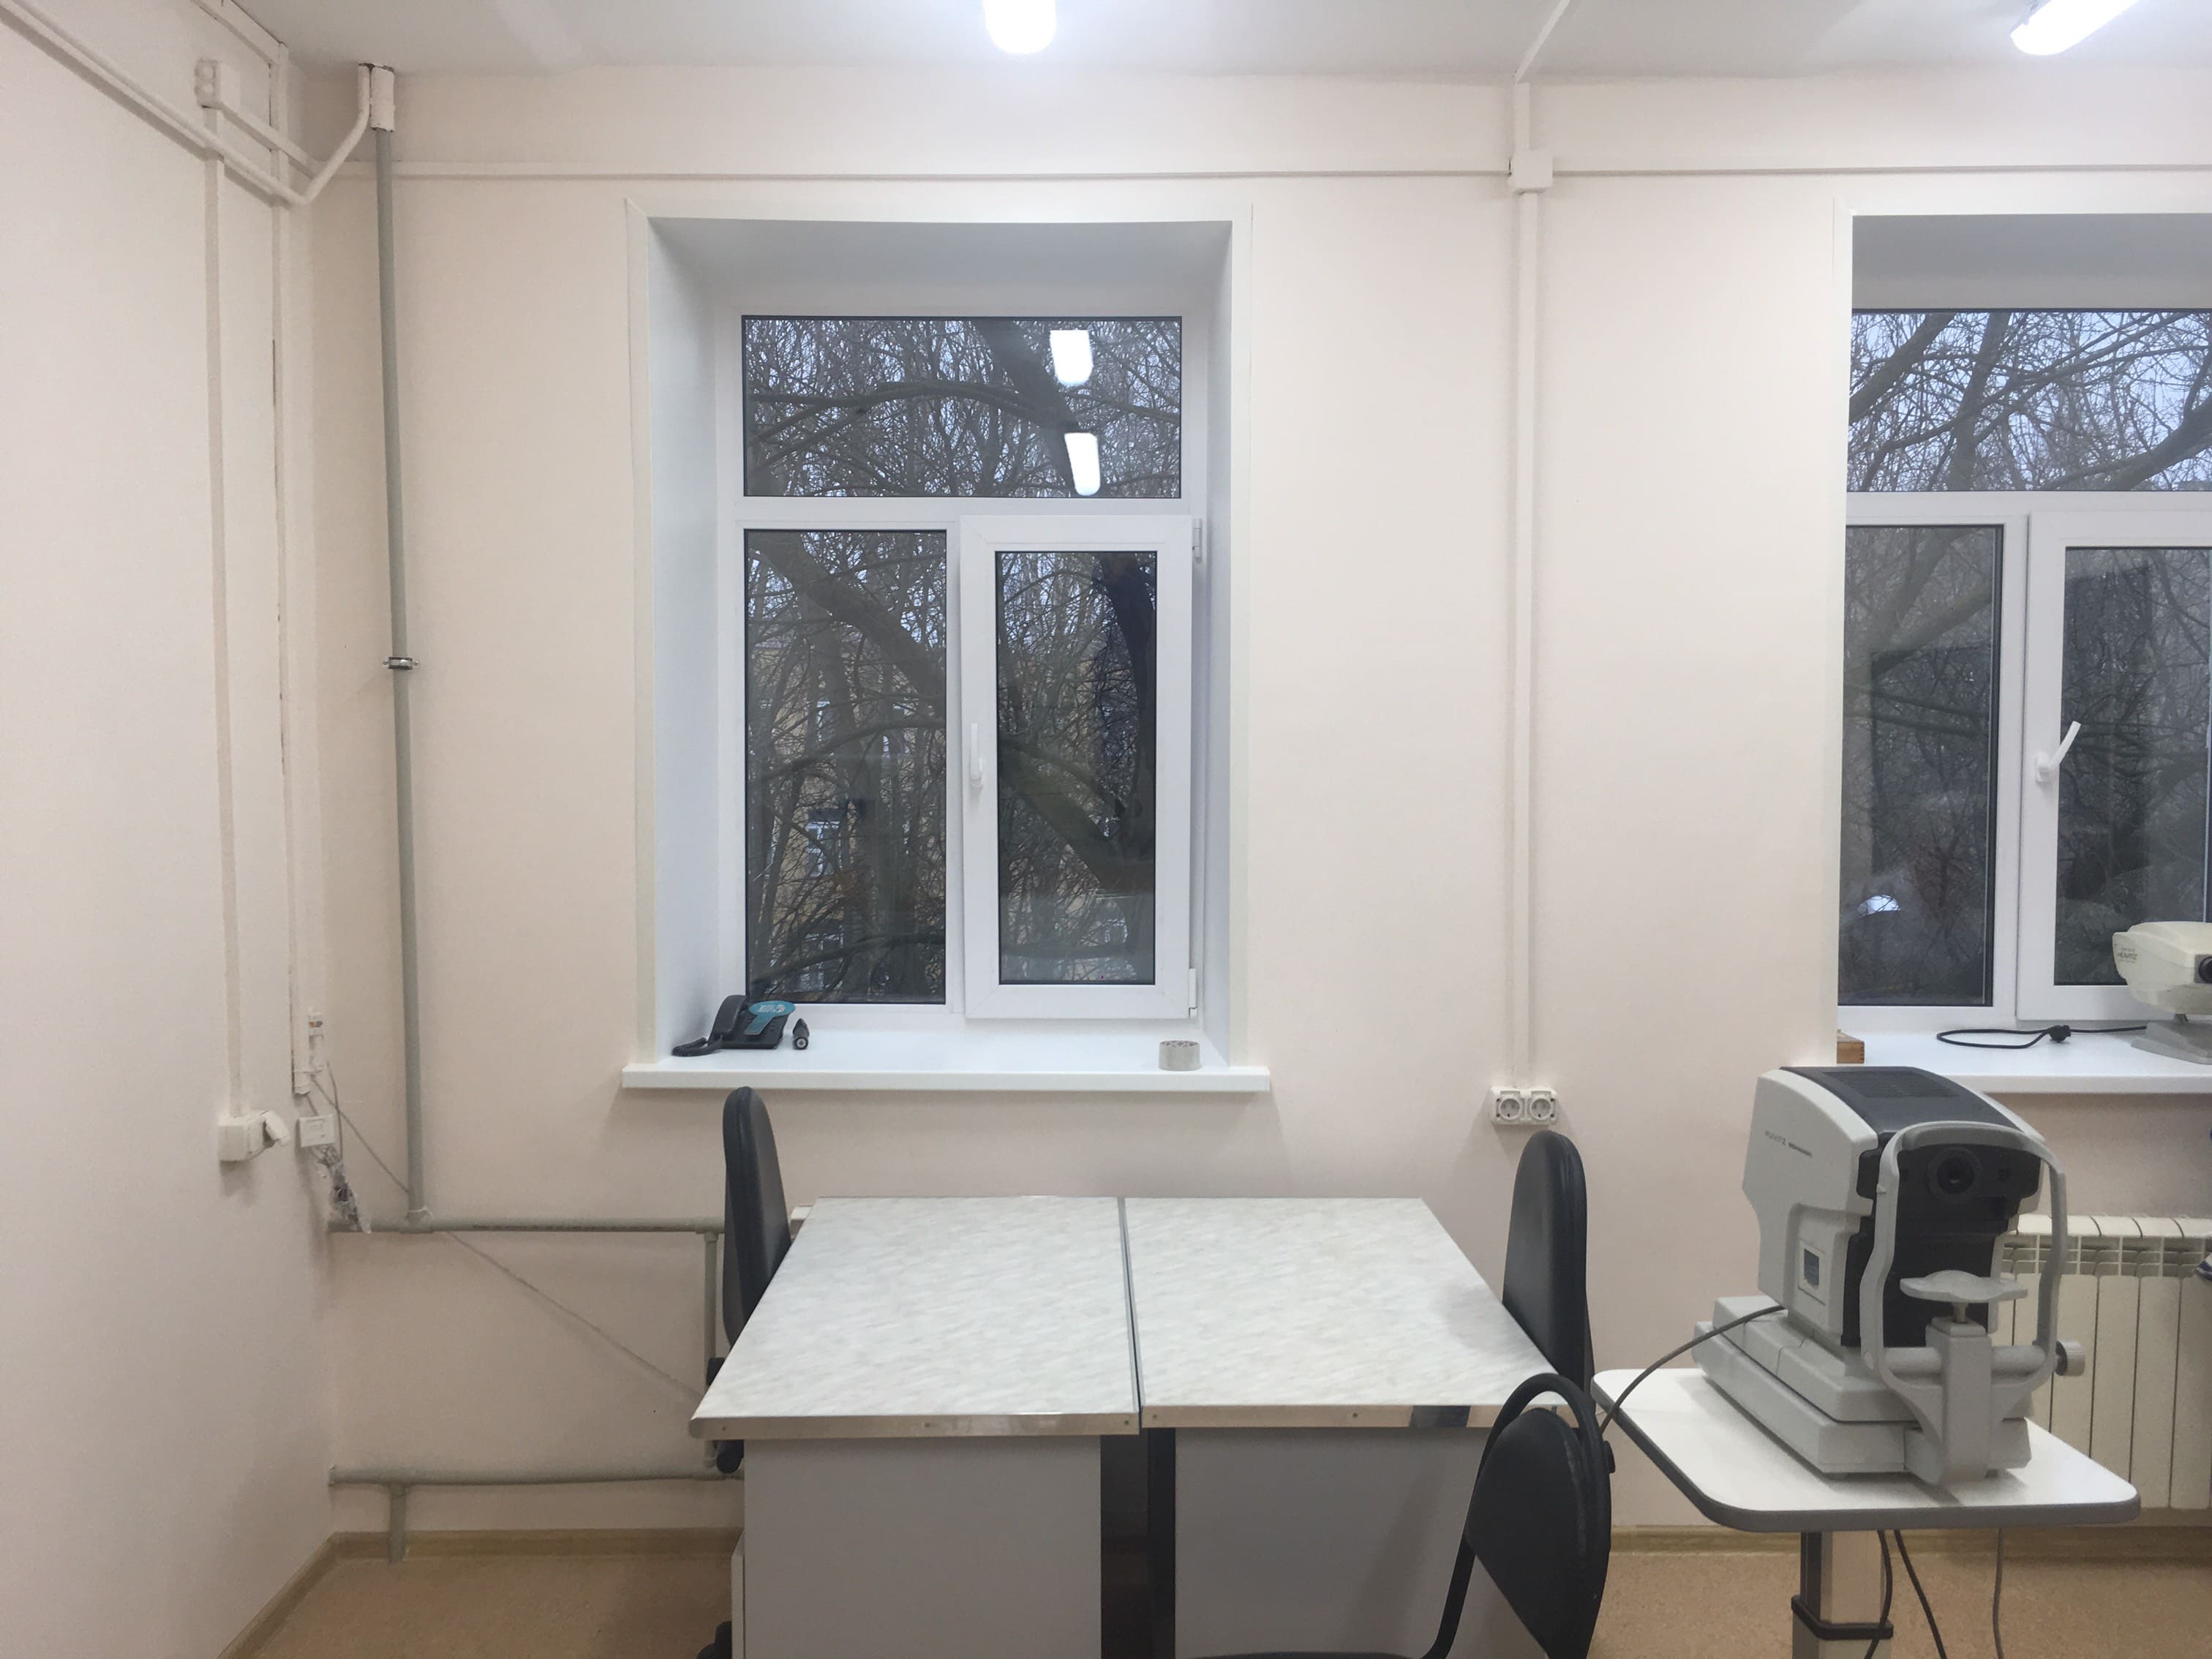 Капитальный ремонт ведется в поликлинике №50 Приокского района Нижнего Новгорода 